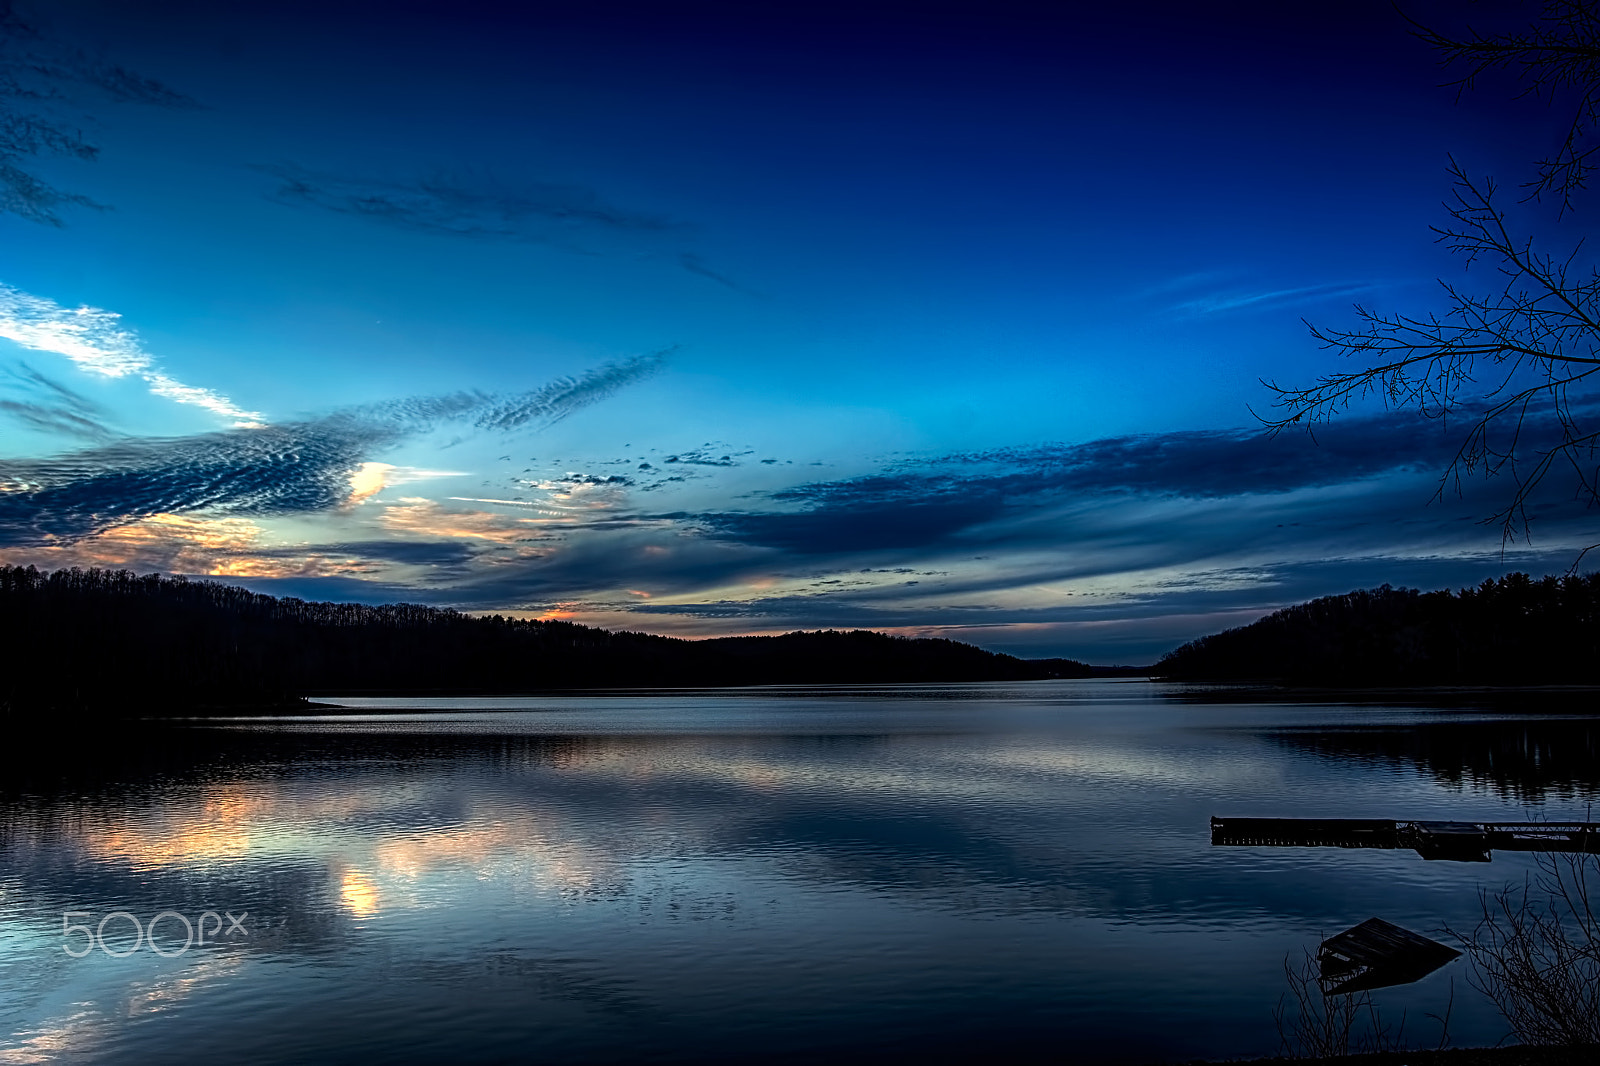 Nikon D7100 sample photo. Tappan lake at dusk photography